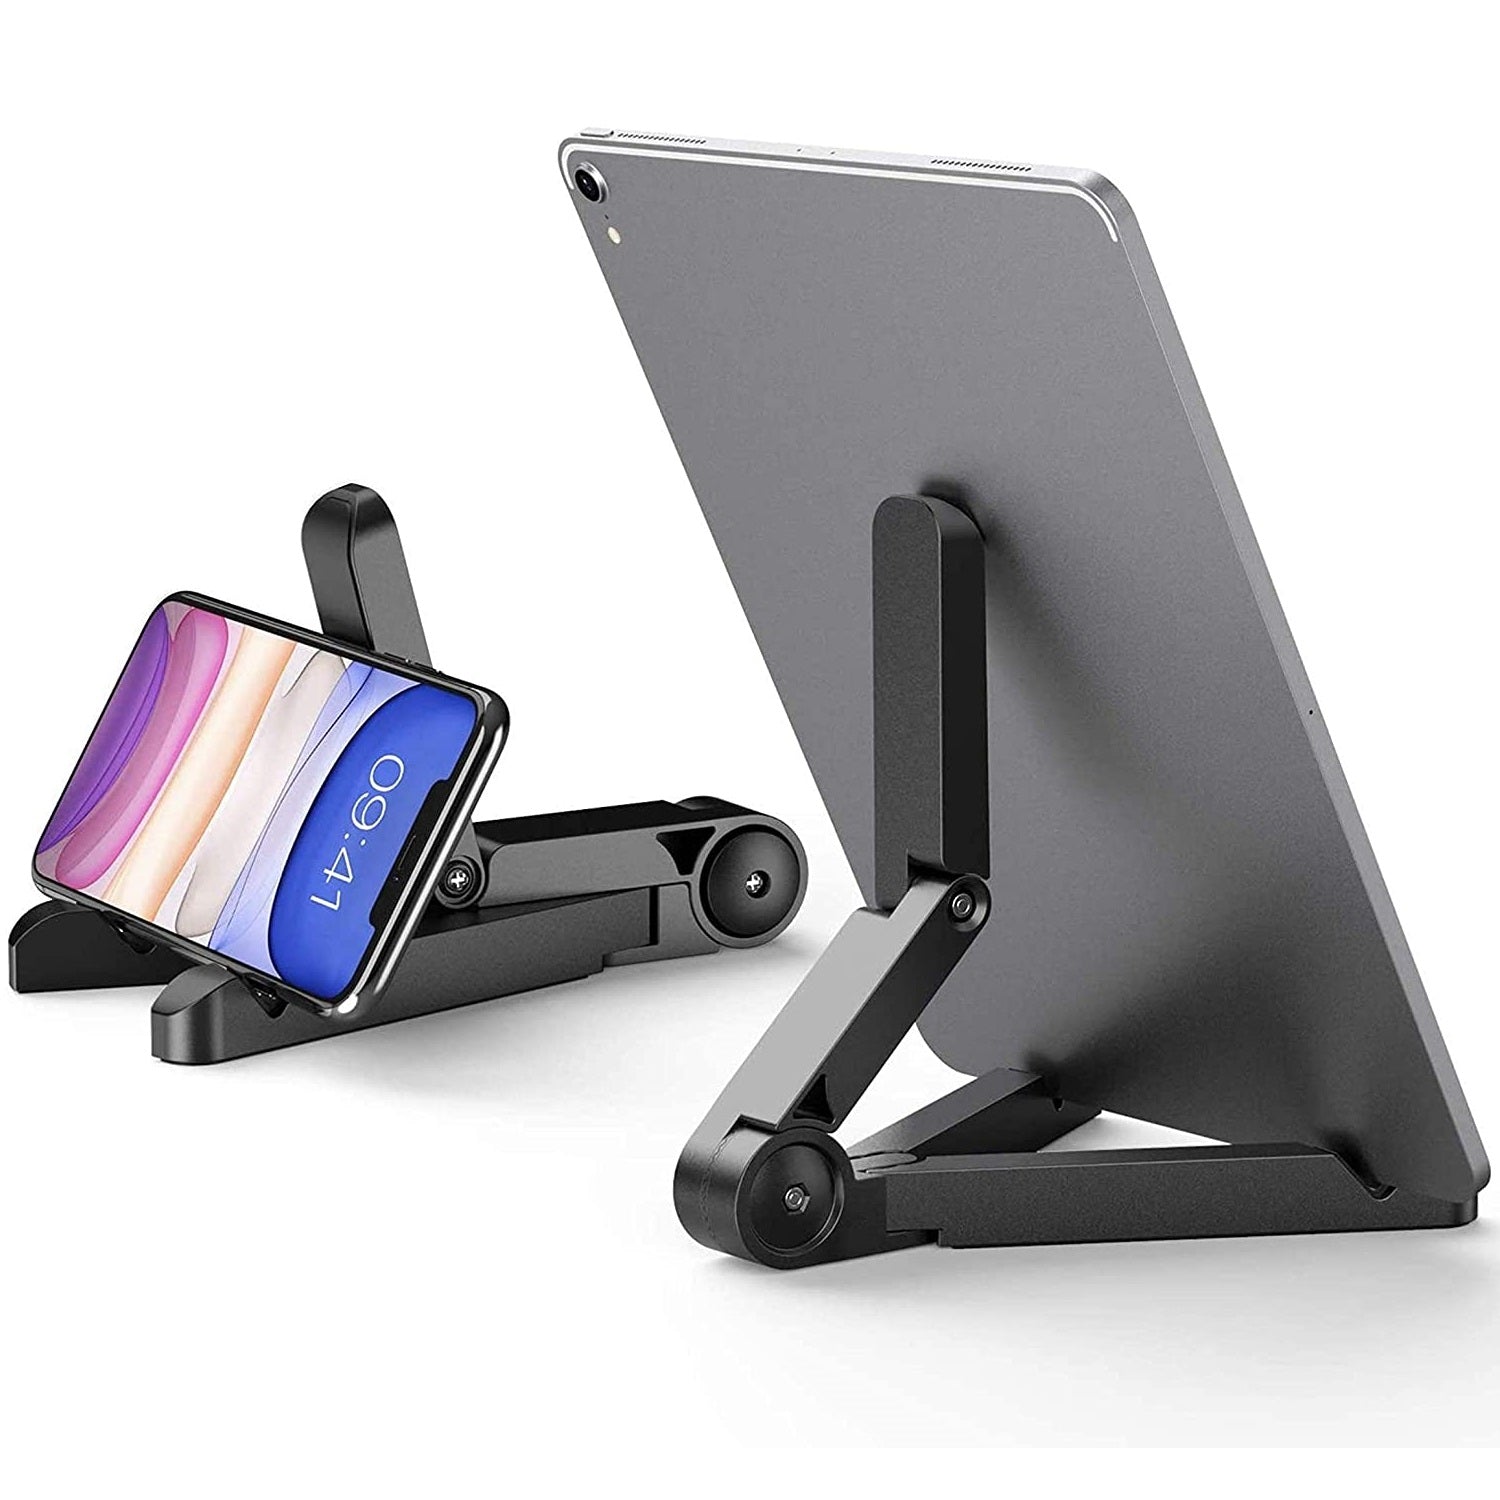 Soporte Plegable De Mesa P/ Celulares Y Tablet iPad Samsung